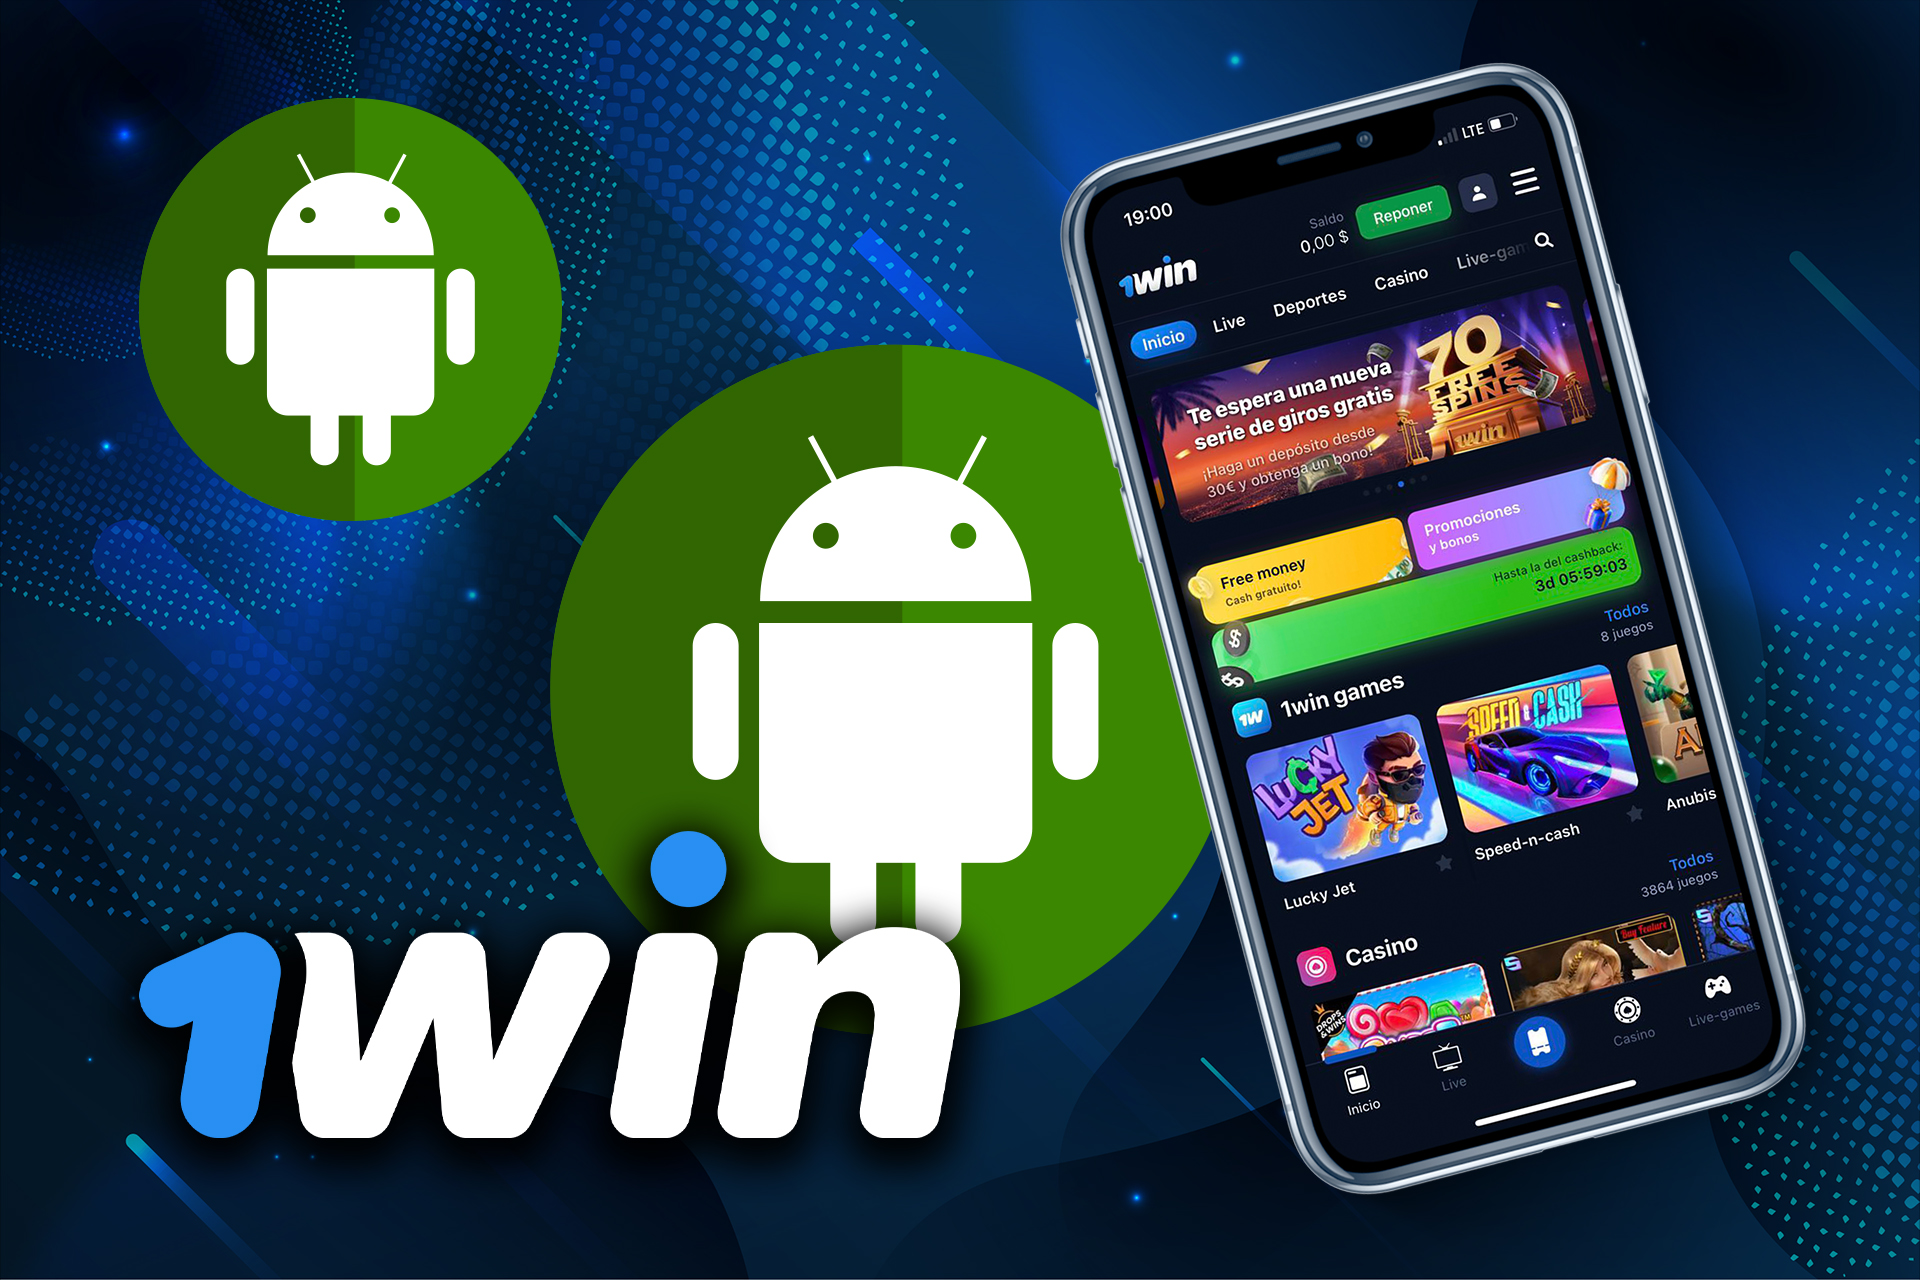 Descarga la aplicación 1win en tu dispositivo Android y apuesta directamente desde tu Teléfono.